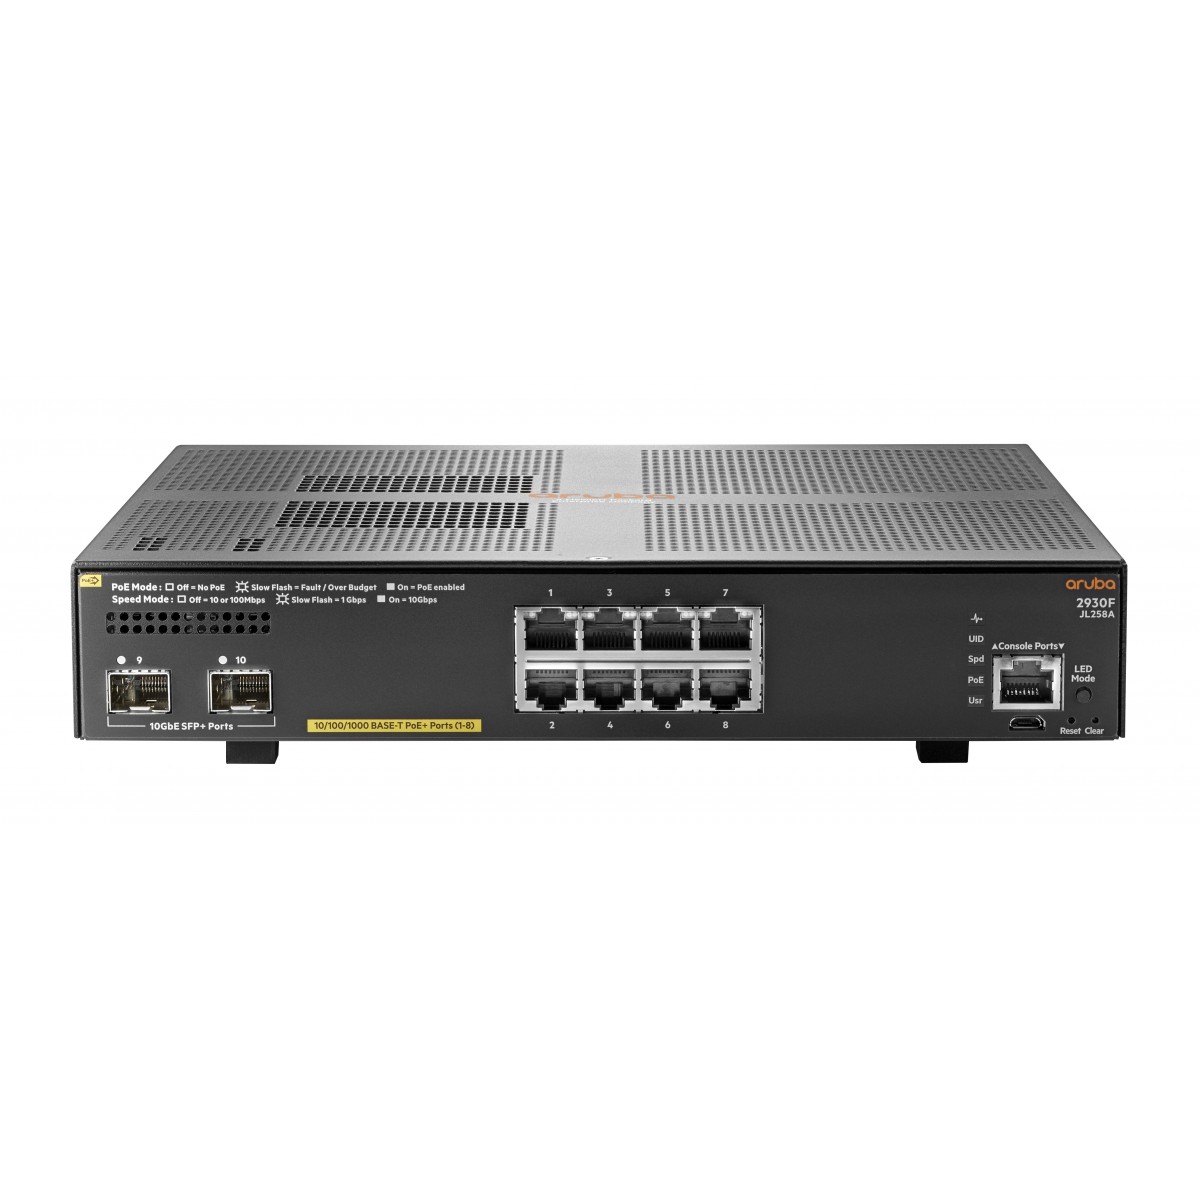 HPE 2930F 8G PoE+ 2SFP+ - Managed - L3 - Gigabit Ethernet (10/100/1000) - Power over Ethernet (PoE) - Rack mounting - 1U